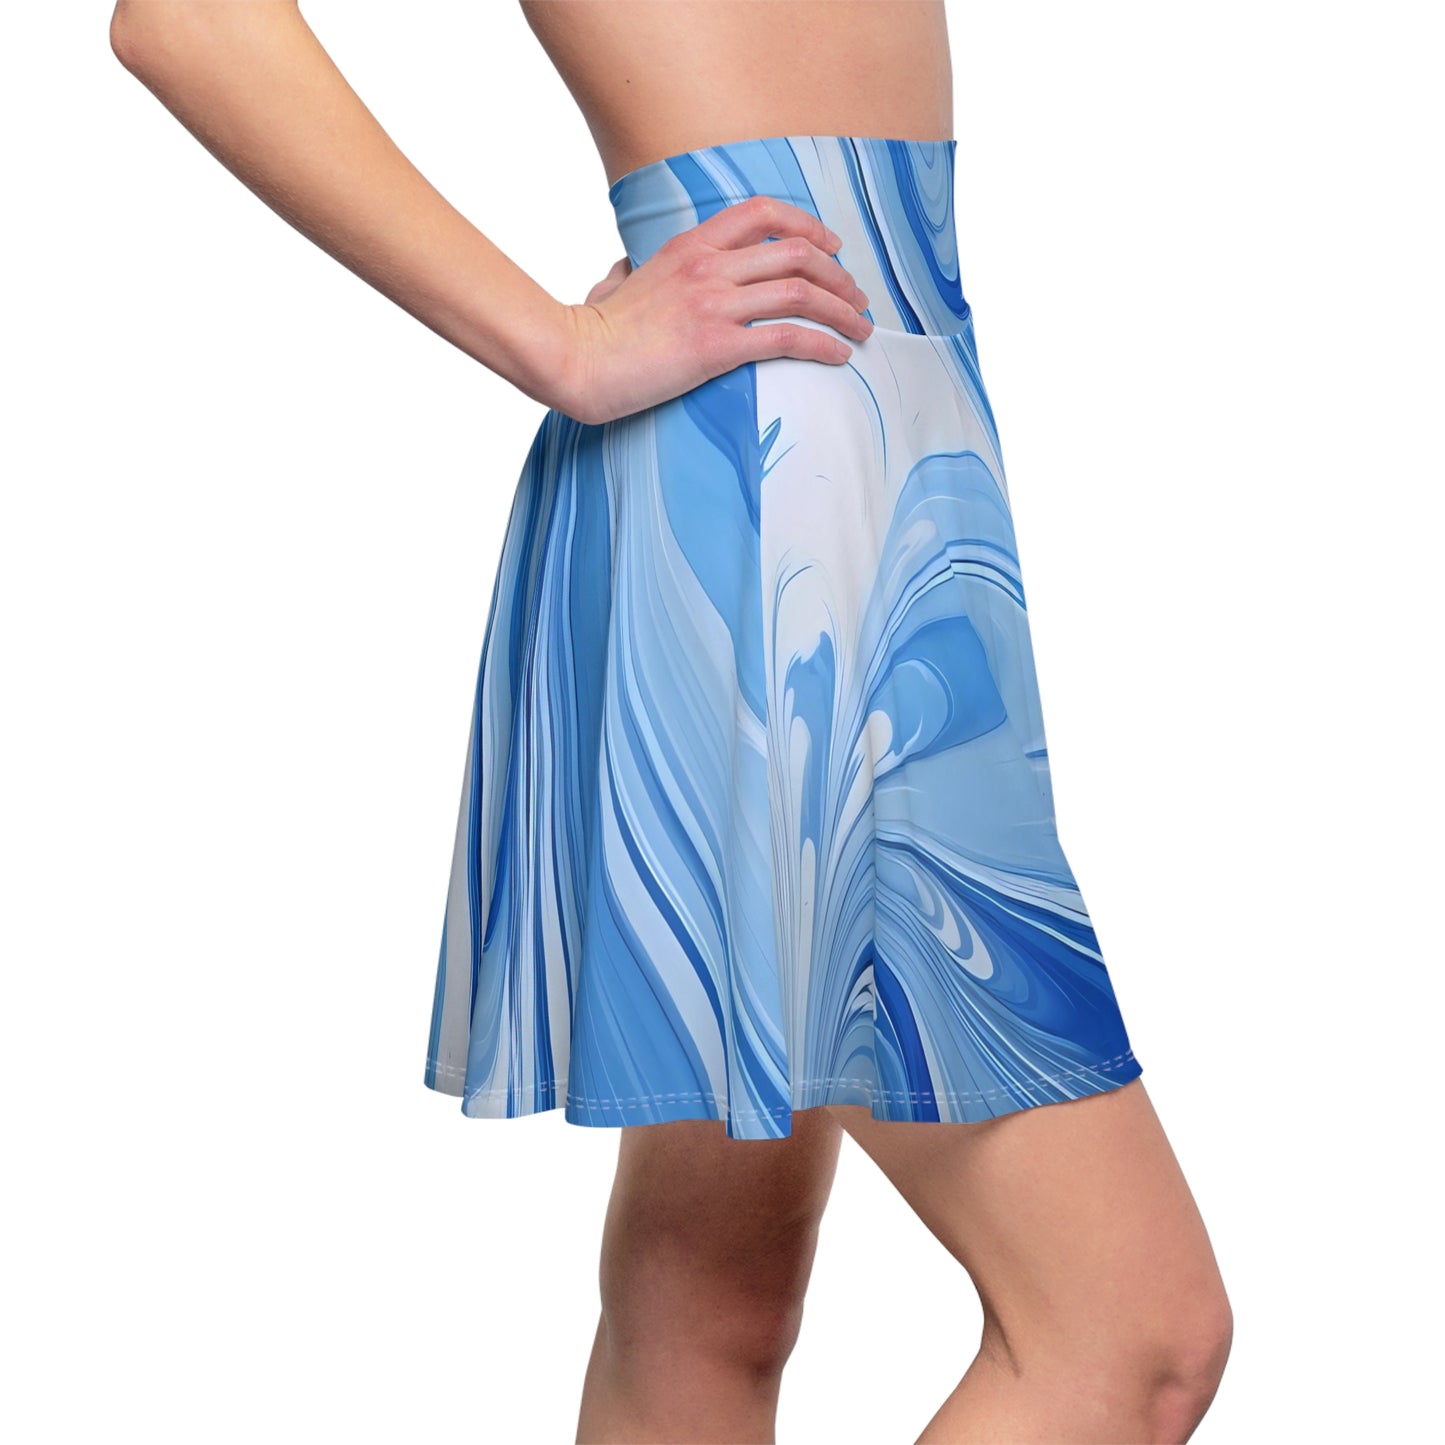 Blue and White Fluid Skater Skirt